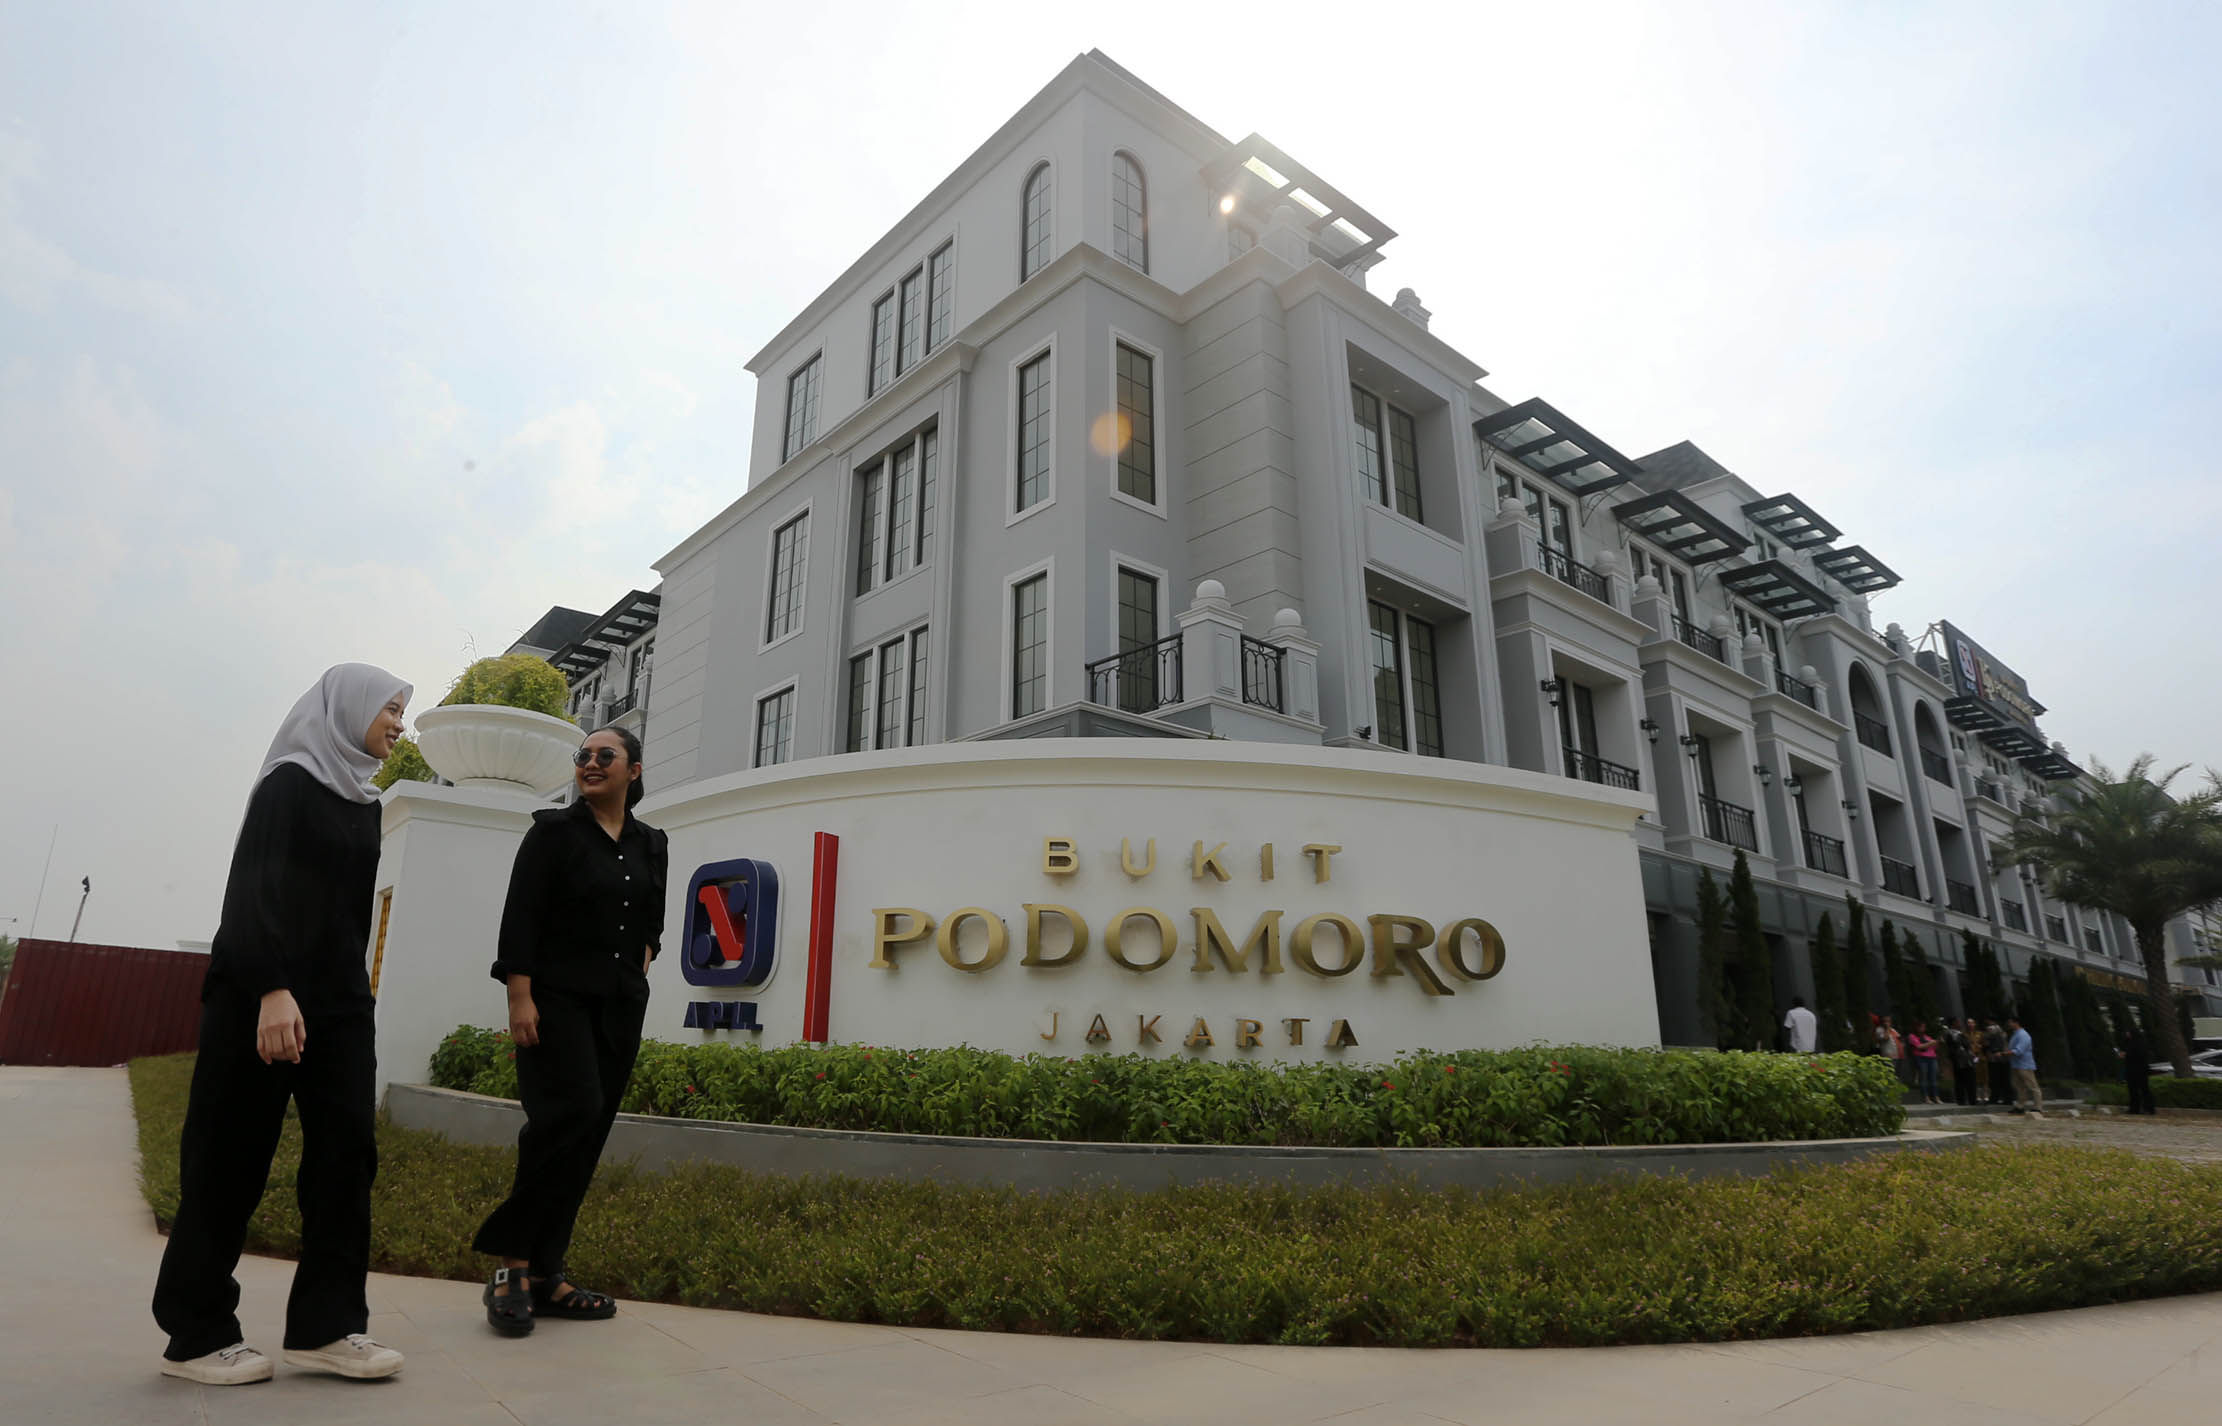 Ruko Bukit Avenue merupakan bagian dari Bukit Podomoro Business Park yang berada di kawasan hunian Bukit Podomoro Jakarta. Area bisnis dan komersial ini akan diproyeksikan menjadi the biggest commercial area dan new central business district (CBD) di Jakarta Timur. Sabtu 15 Desember 2023. Foto : Panji Asmoro/TrenAsia